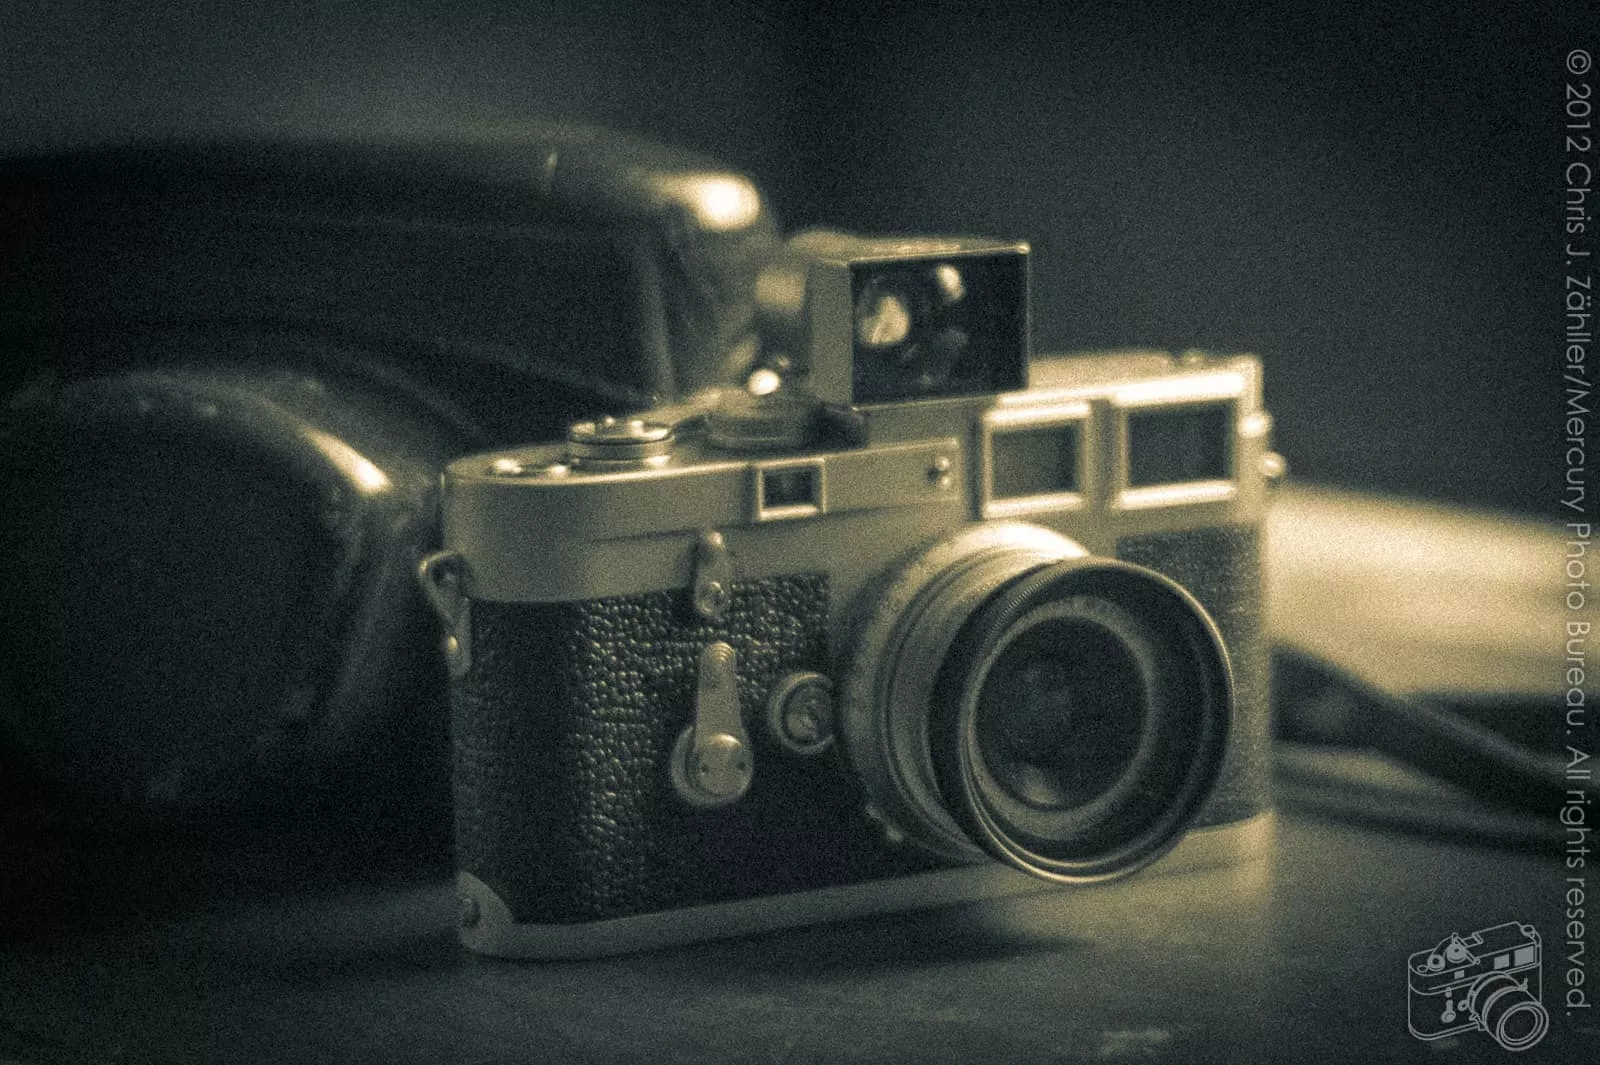 Leica M3, manufactured ca. 1957